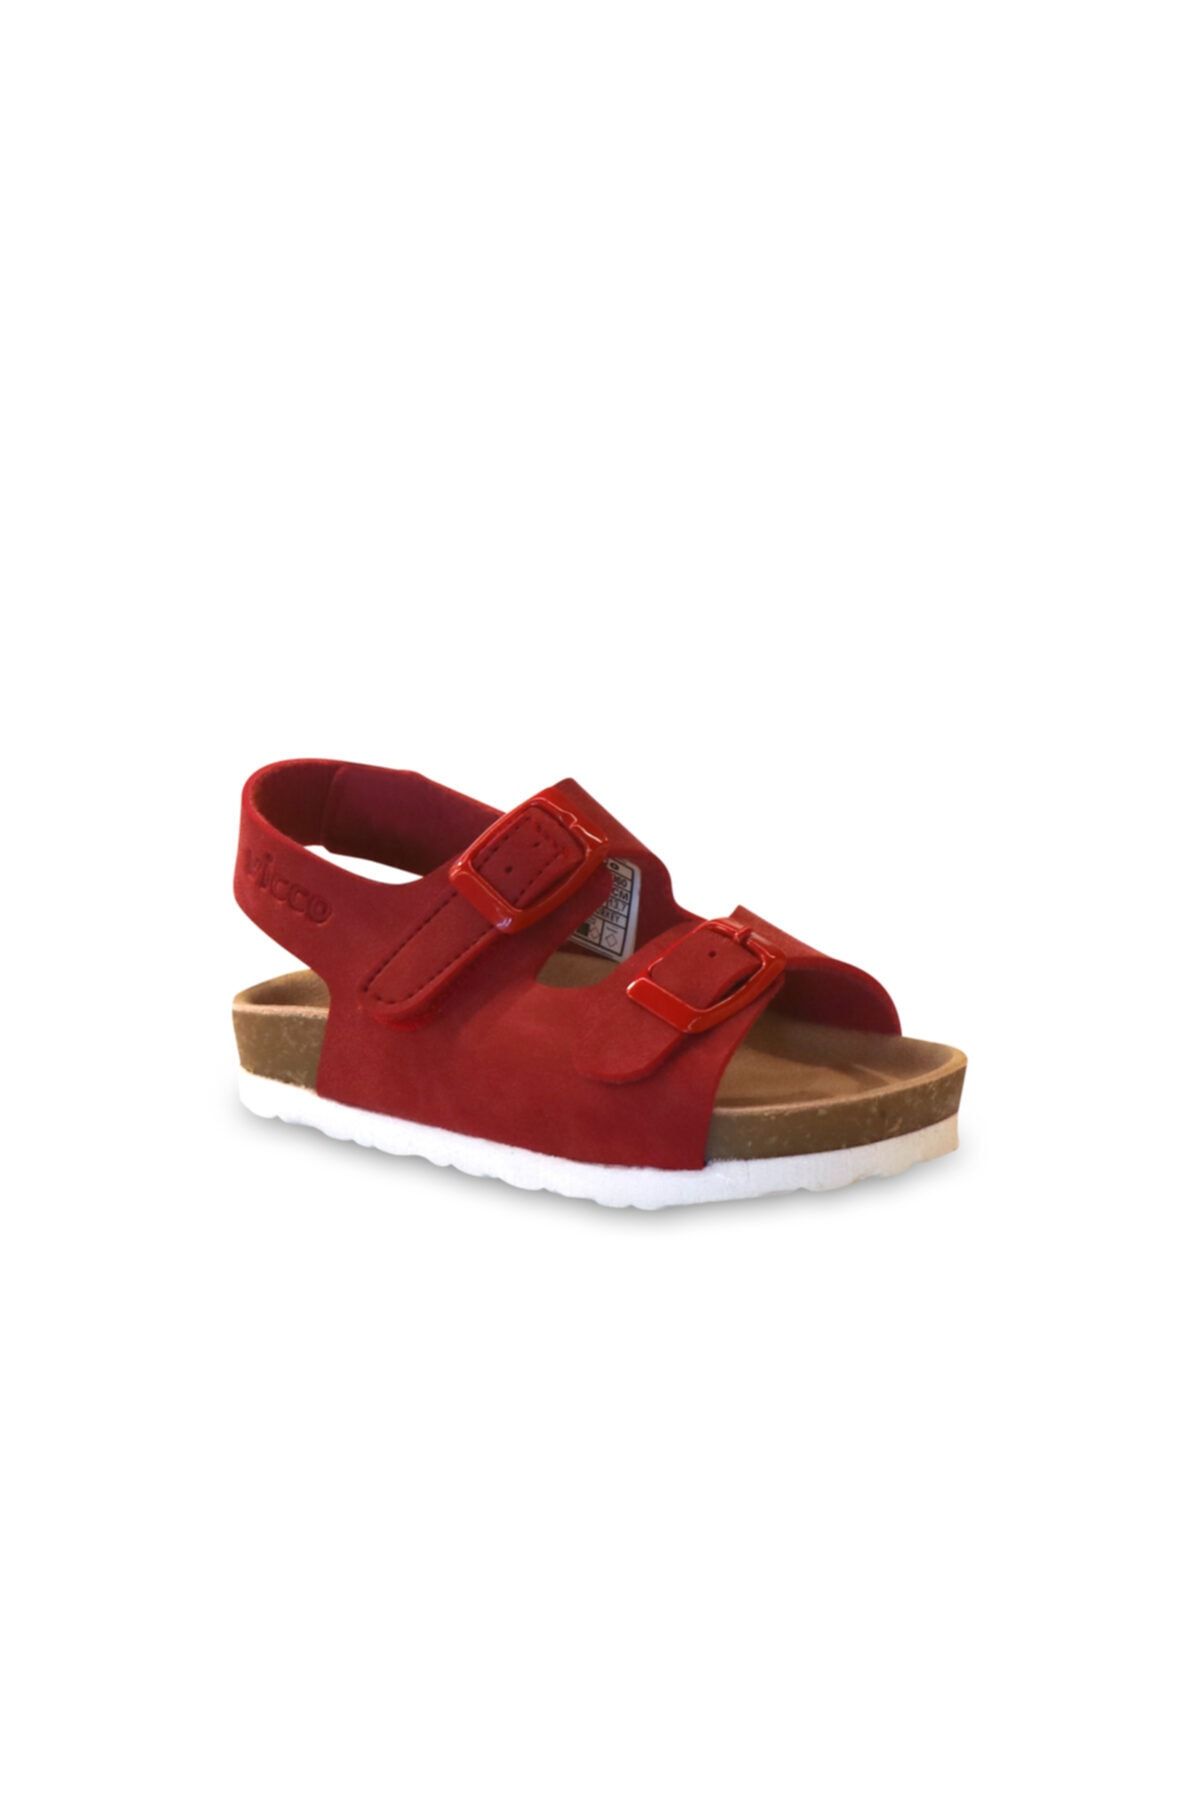 Vicco Last Metalik Unisex Bebe Kırmızı/kırmızı Sandalet